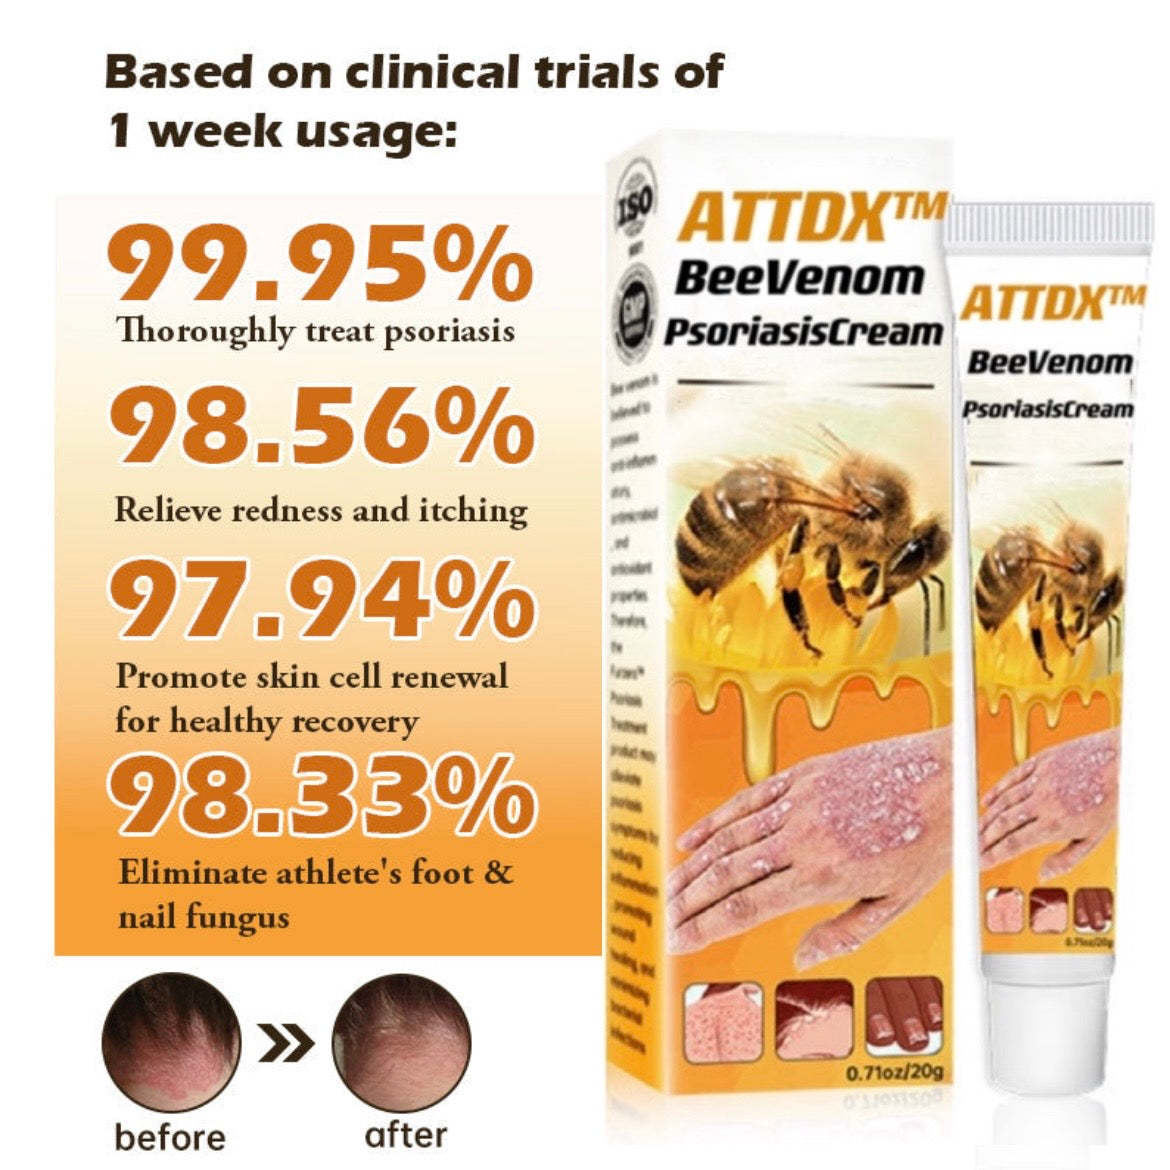 ATTDX™ BeeVenom PsoriasisCream